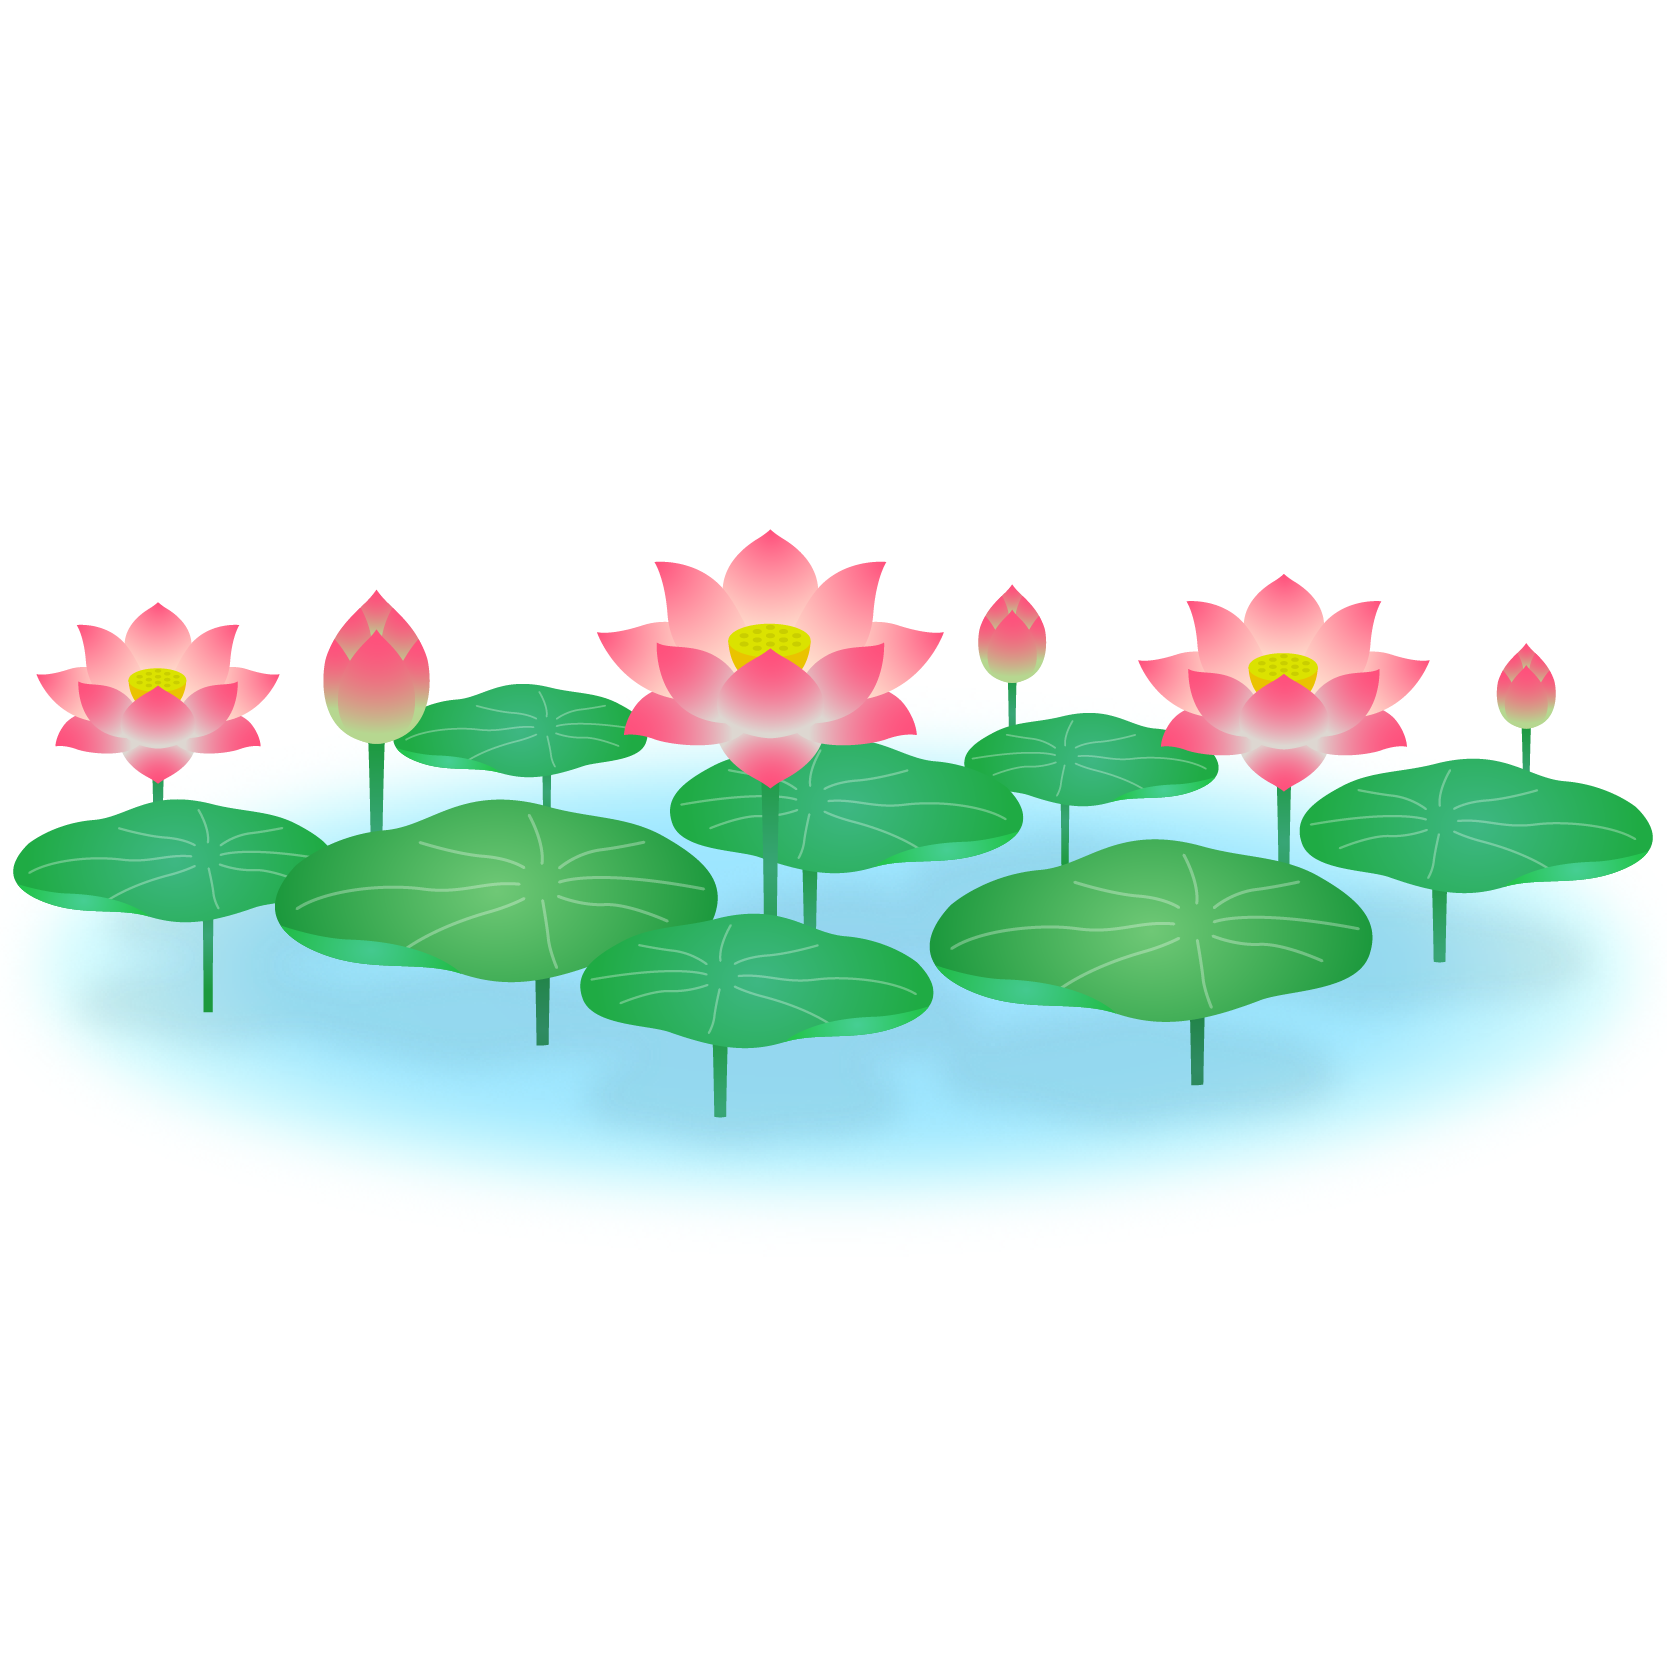 商用フリー 無料イラスト ピンクの蓮の花のイラスト Lotus Illustration005 商用ok フリー素材集 ナイスなイラスト